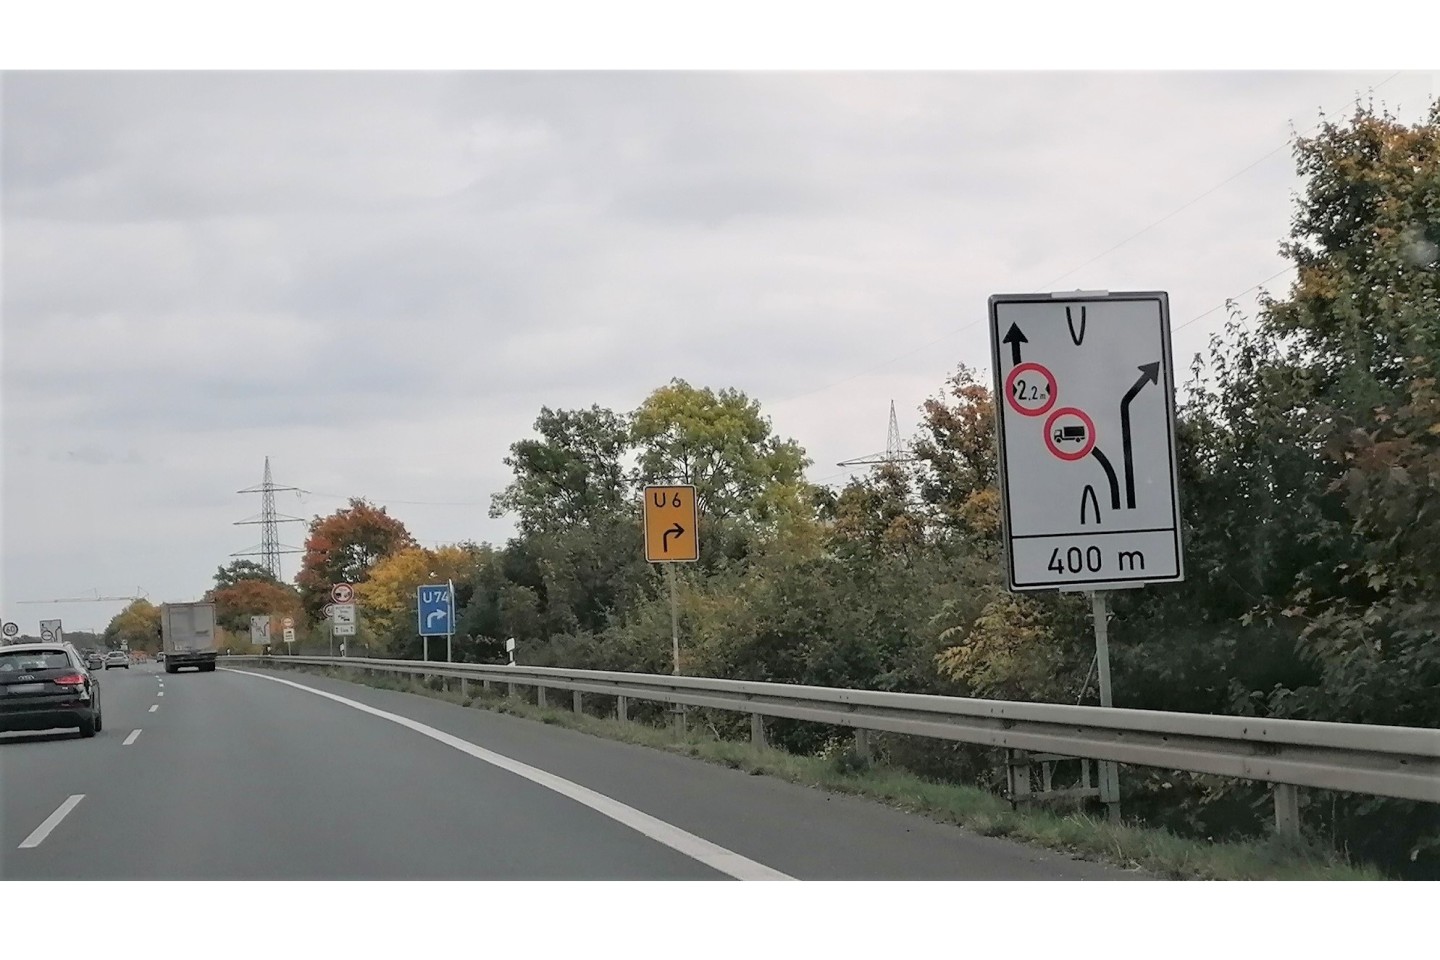 POL-PB: Zahlreiche Verkehrsverstöße von Lkw-Fahrern - Aktuelle Verbotsschilder in B64-Baustelle werden häufig missachtet Bildunterschrift: Durchfahrtverbote an der B64-Baustelle Paderborn (ots)